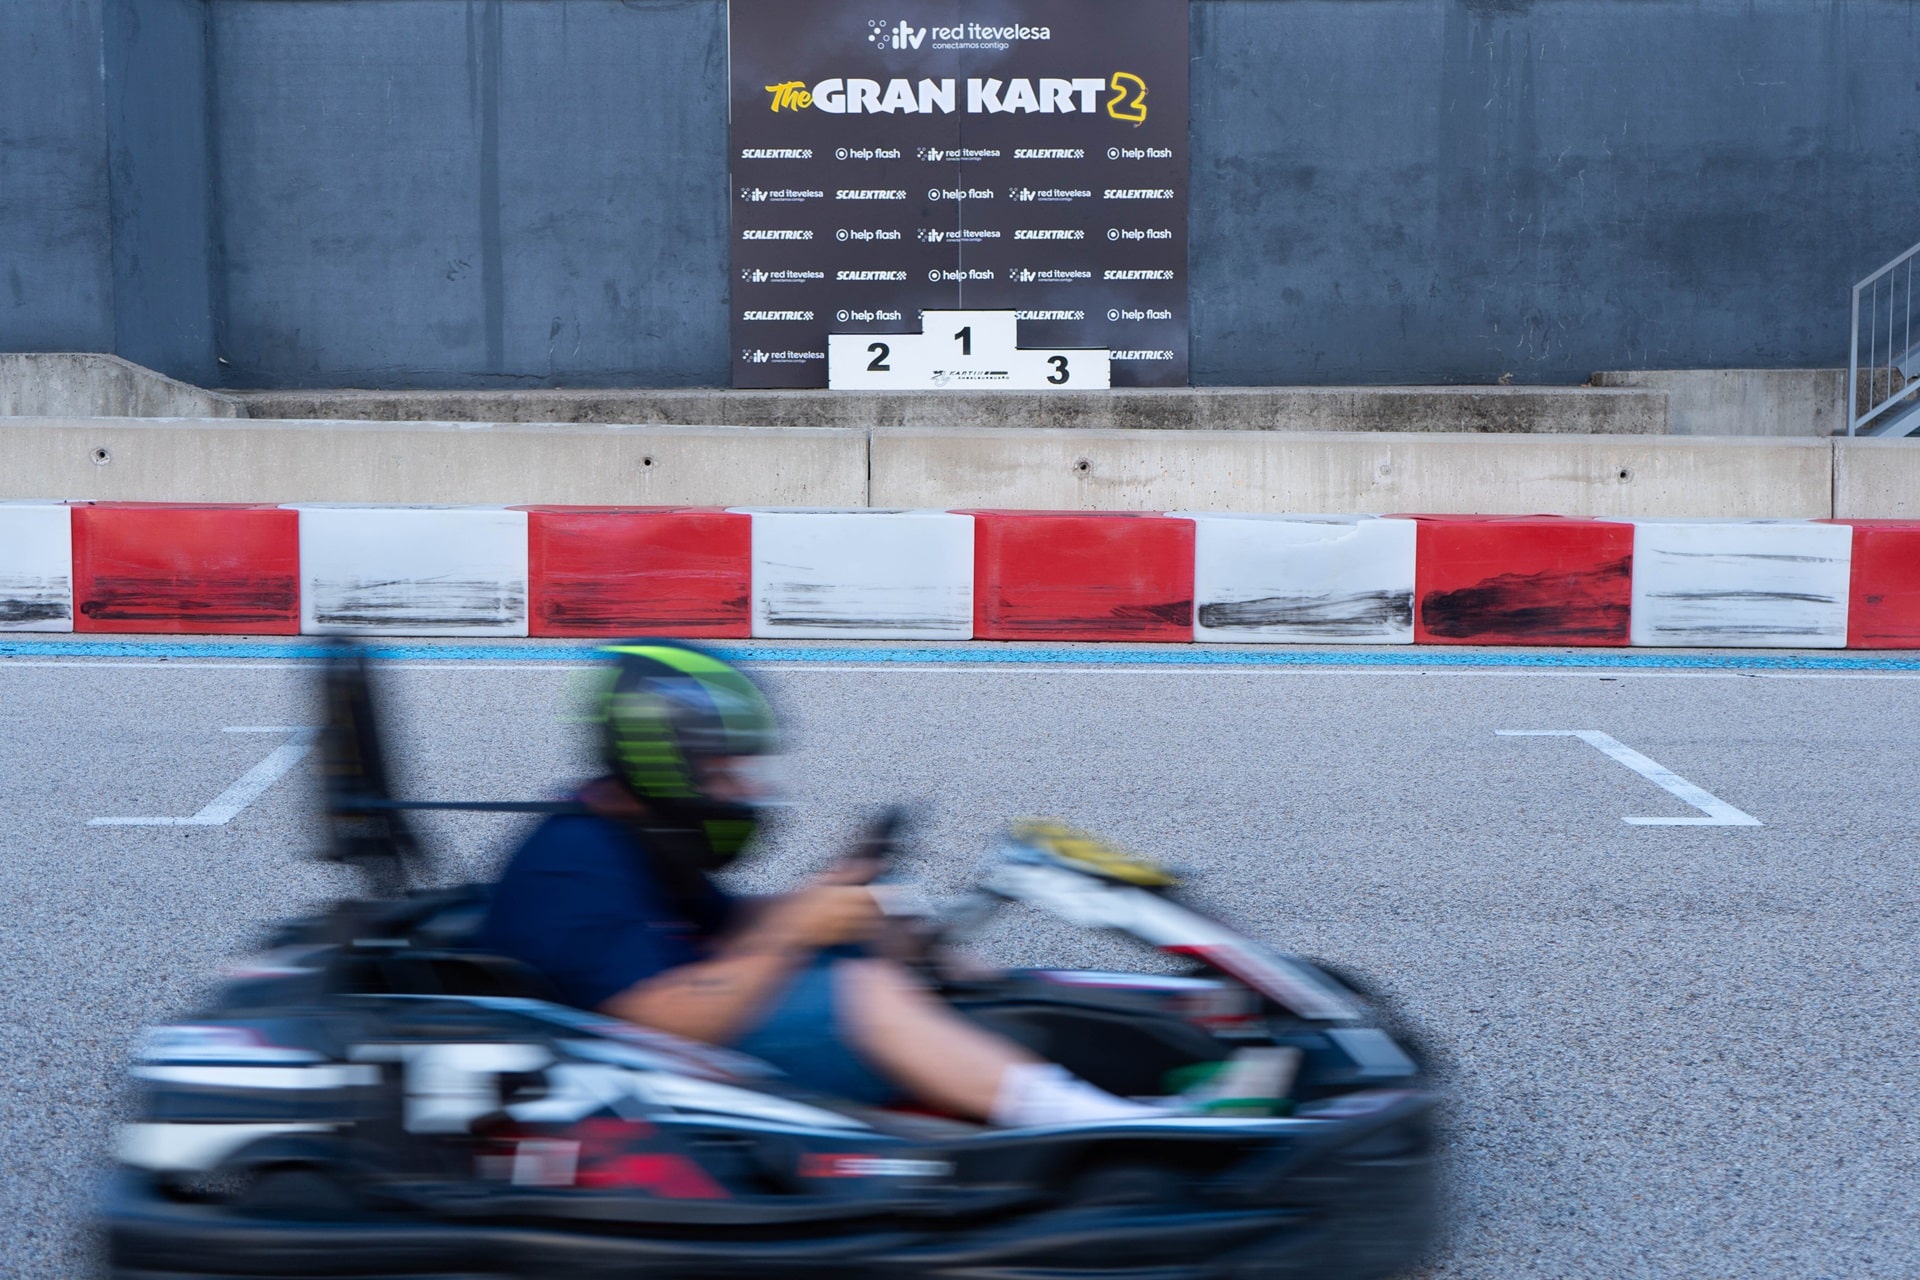 Red Itevelesa, celebra con éxito la 2ª edición de su evento "The Gran Kart"